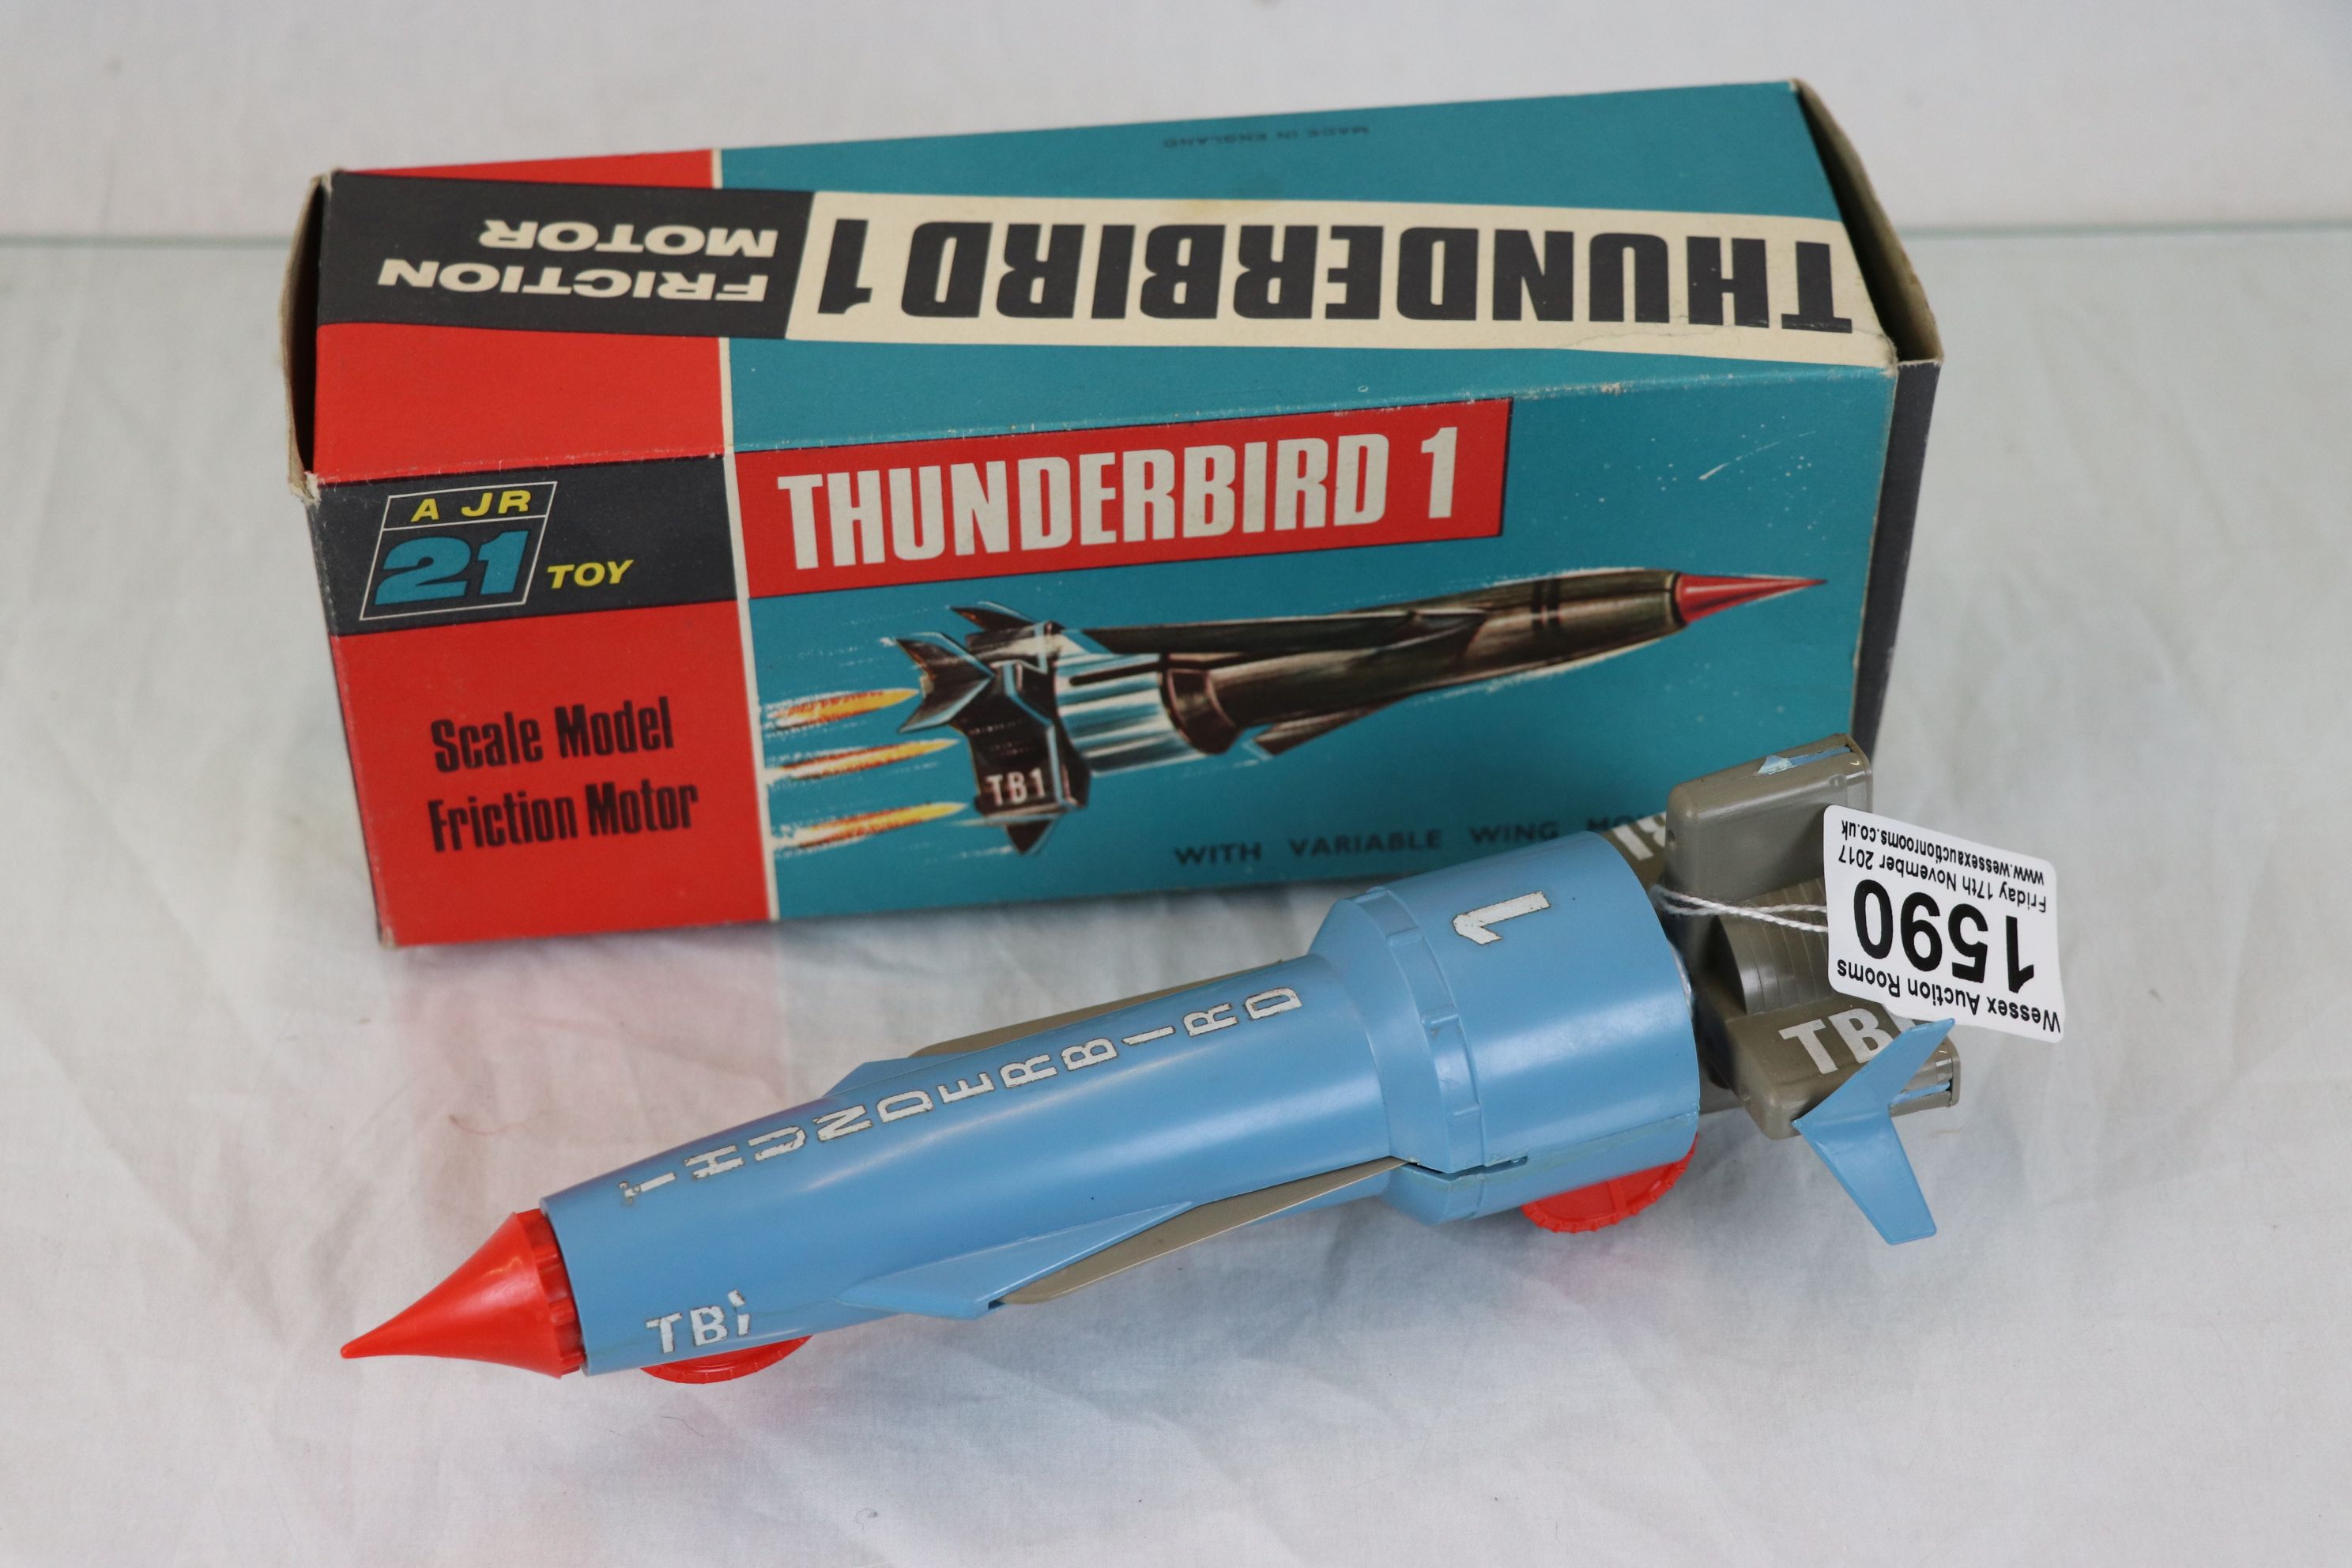 Boxed AJ Rosenthal 21 Thunderbirds Thunderbird 1 friction motor vehicle with some damage, box gd - Image 2 of 2